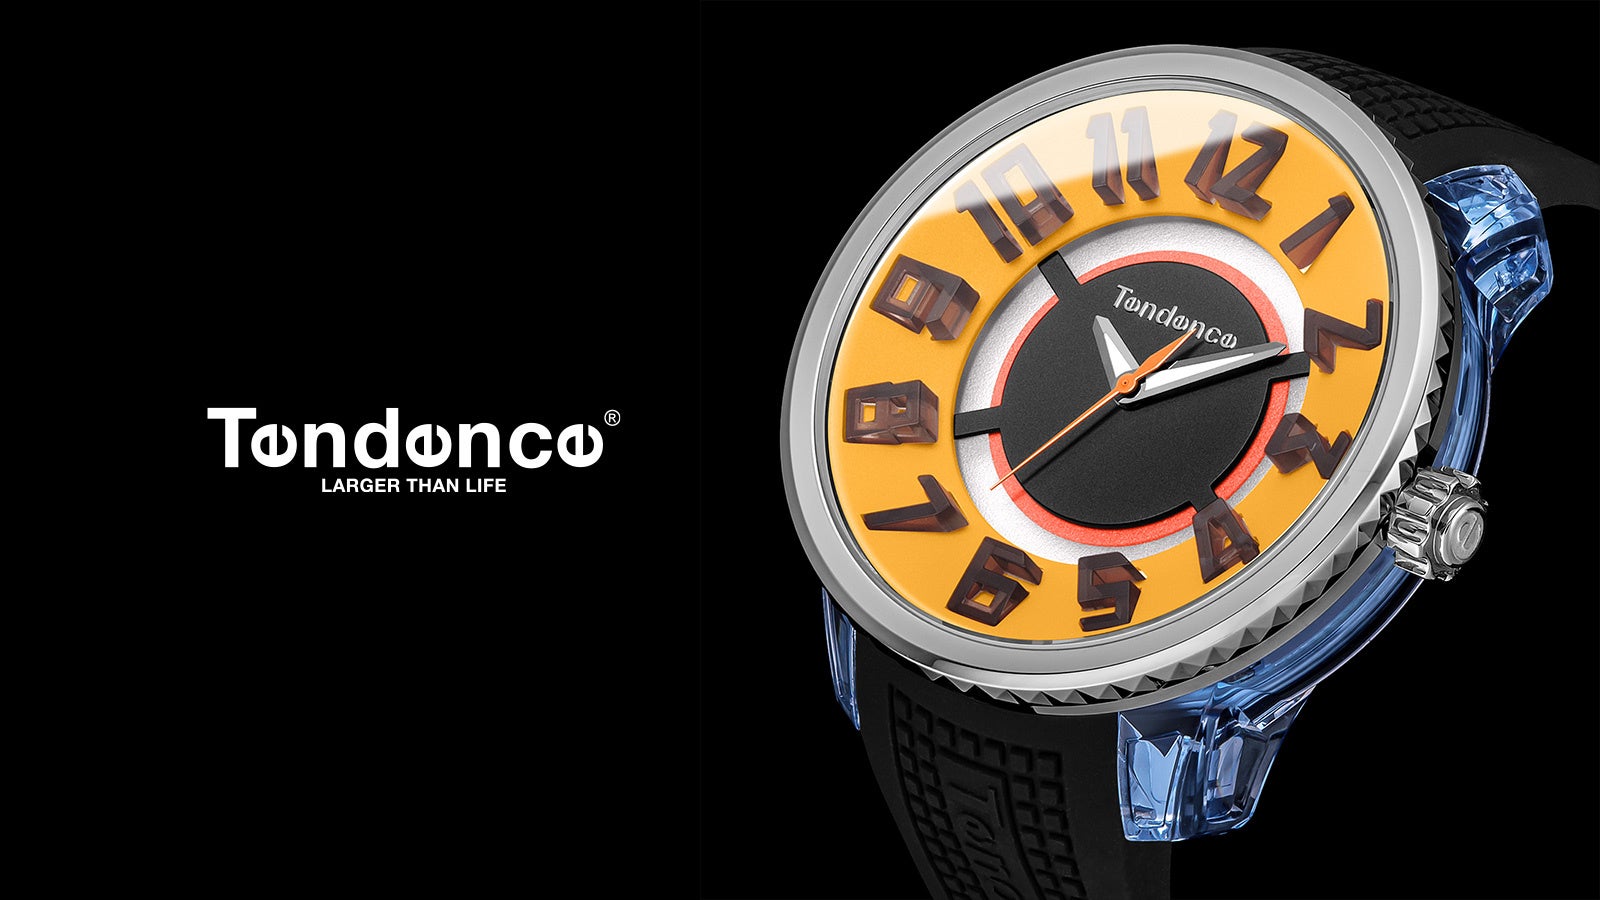 スイス生まれの腕時計ブランドTendence（テンデンス）は9月27日(水)から大丸東京で開催される『ウォッチセレクション』にて、会場のみで取り扱う限定コレクションを3カ月連続で発売します。